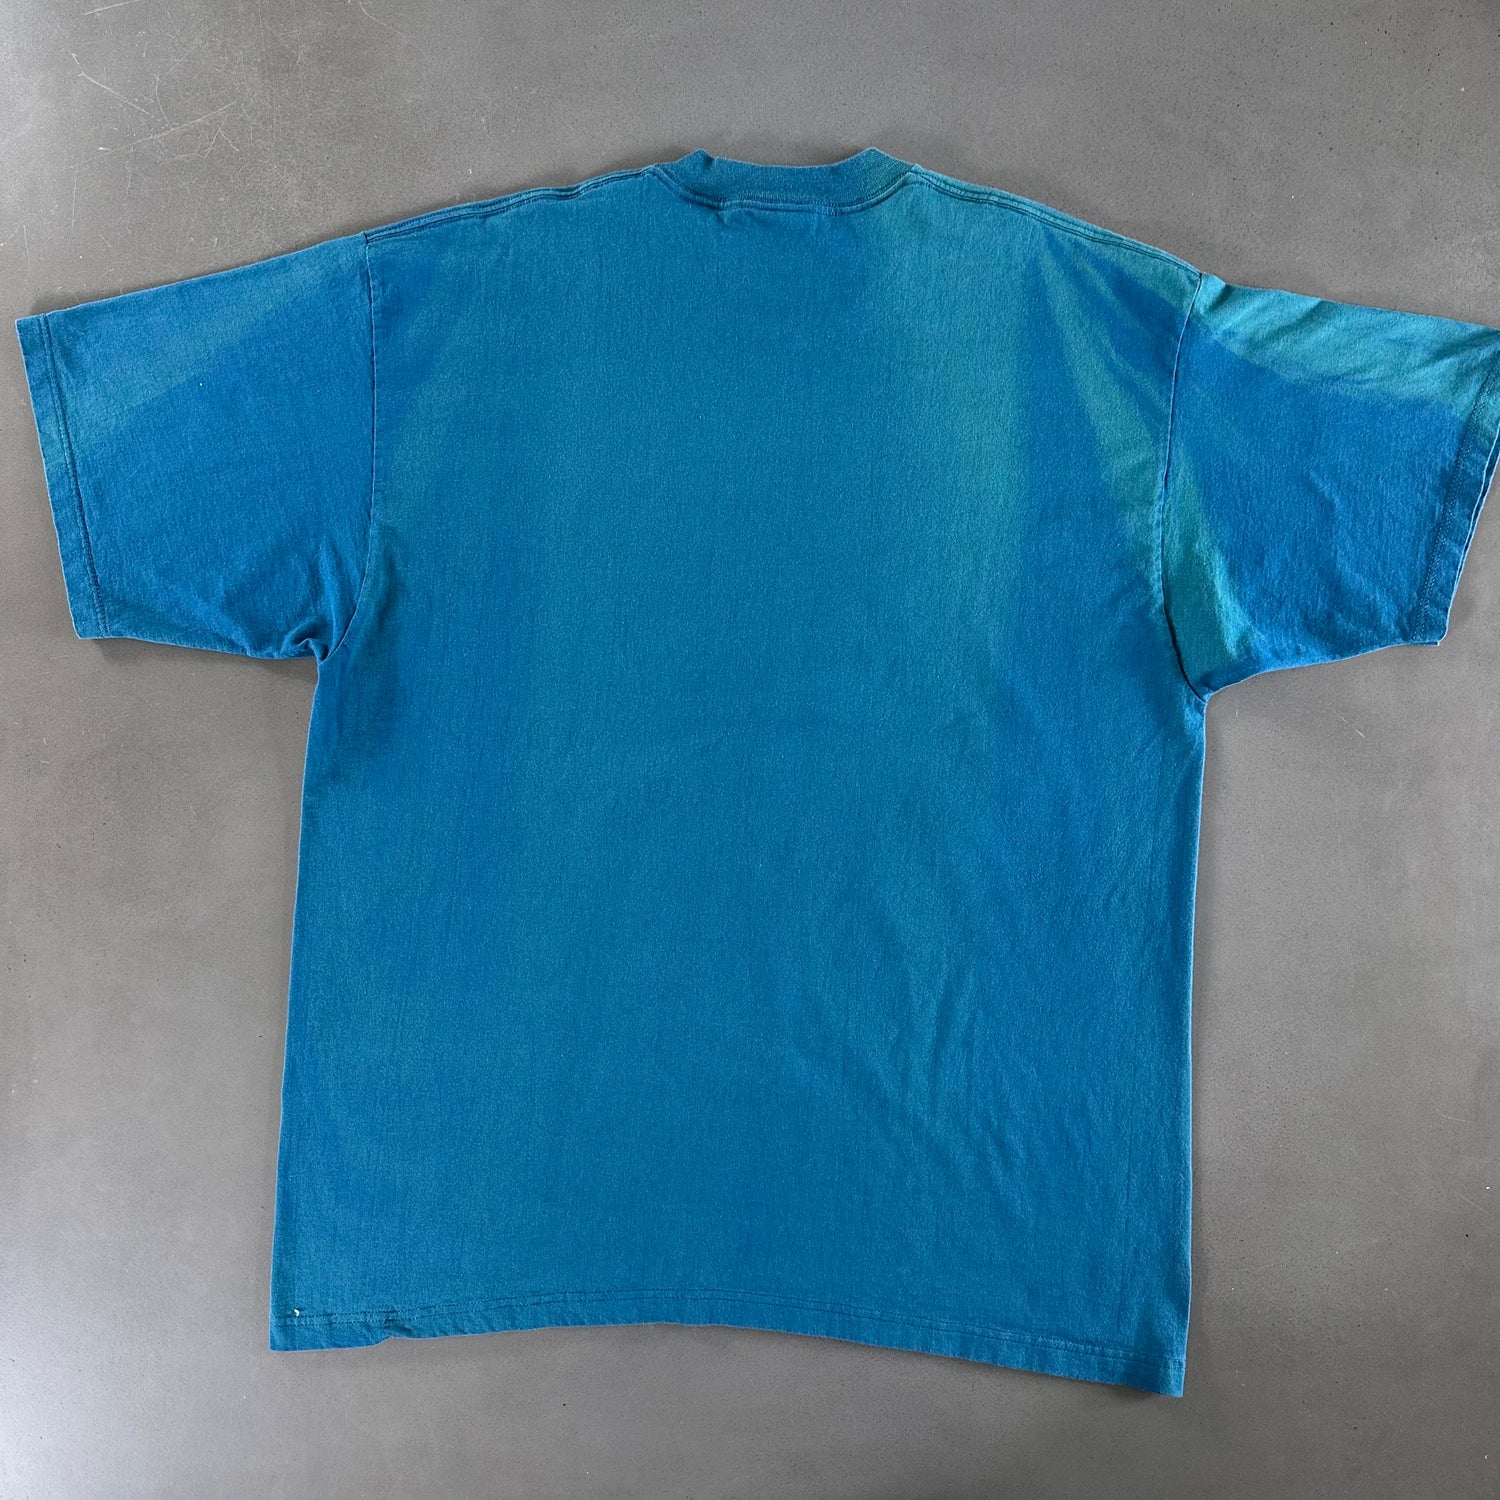 Vintage 1994 Ocean T-shirt size XXL